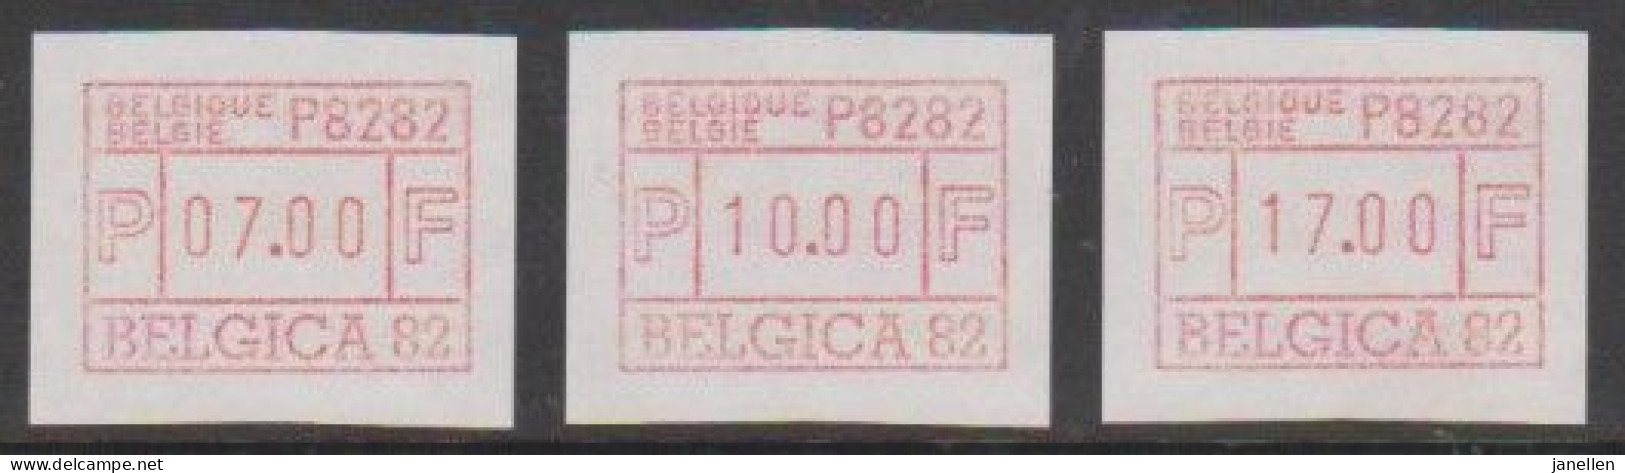 ATM 6A - Belgica 82 - Postfris